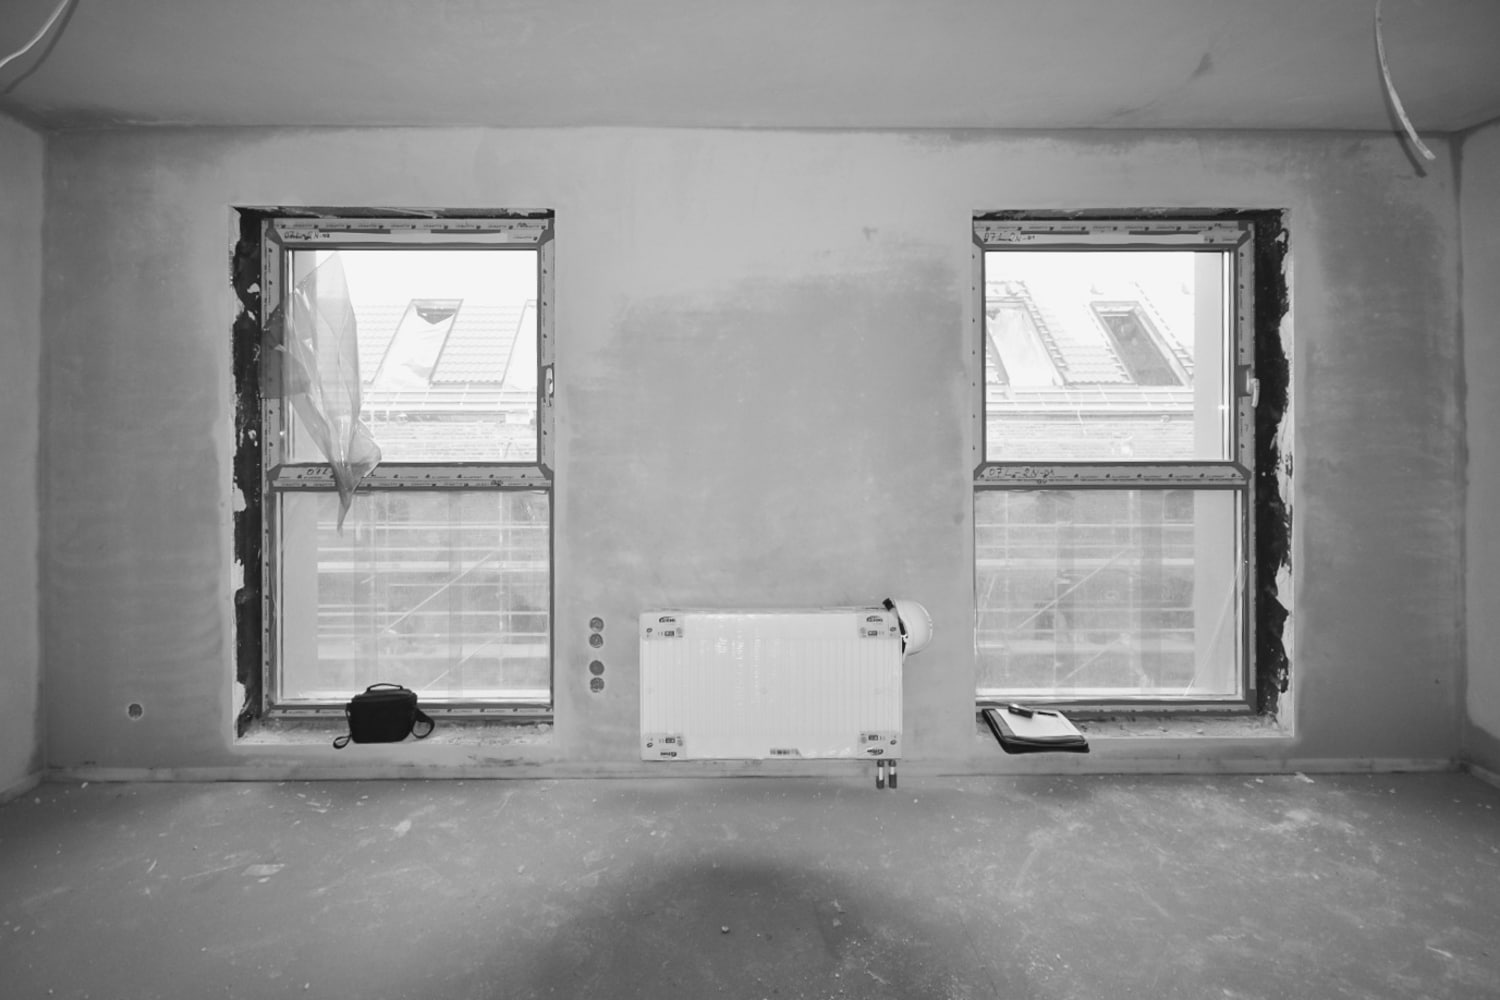 Aranżacja Mieszkania #7, stworzona i wykonana przez warsztat Don't Worry, tworzący aranżację wnętrz oraz wykonujący meble na zamówienie.